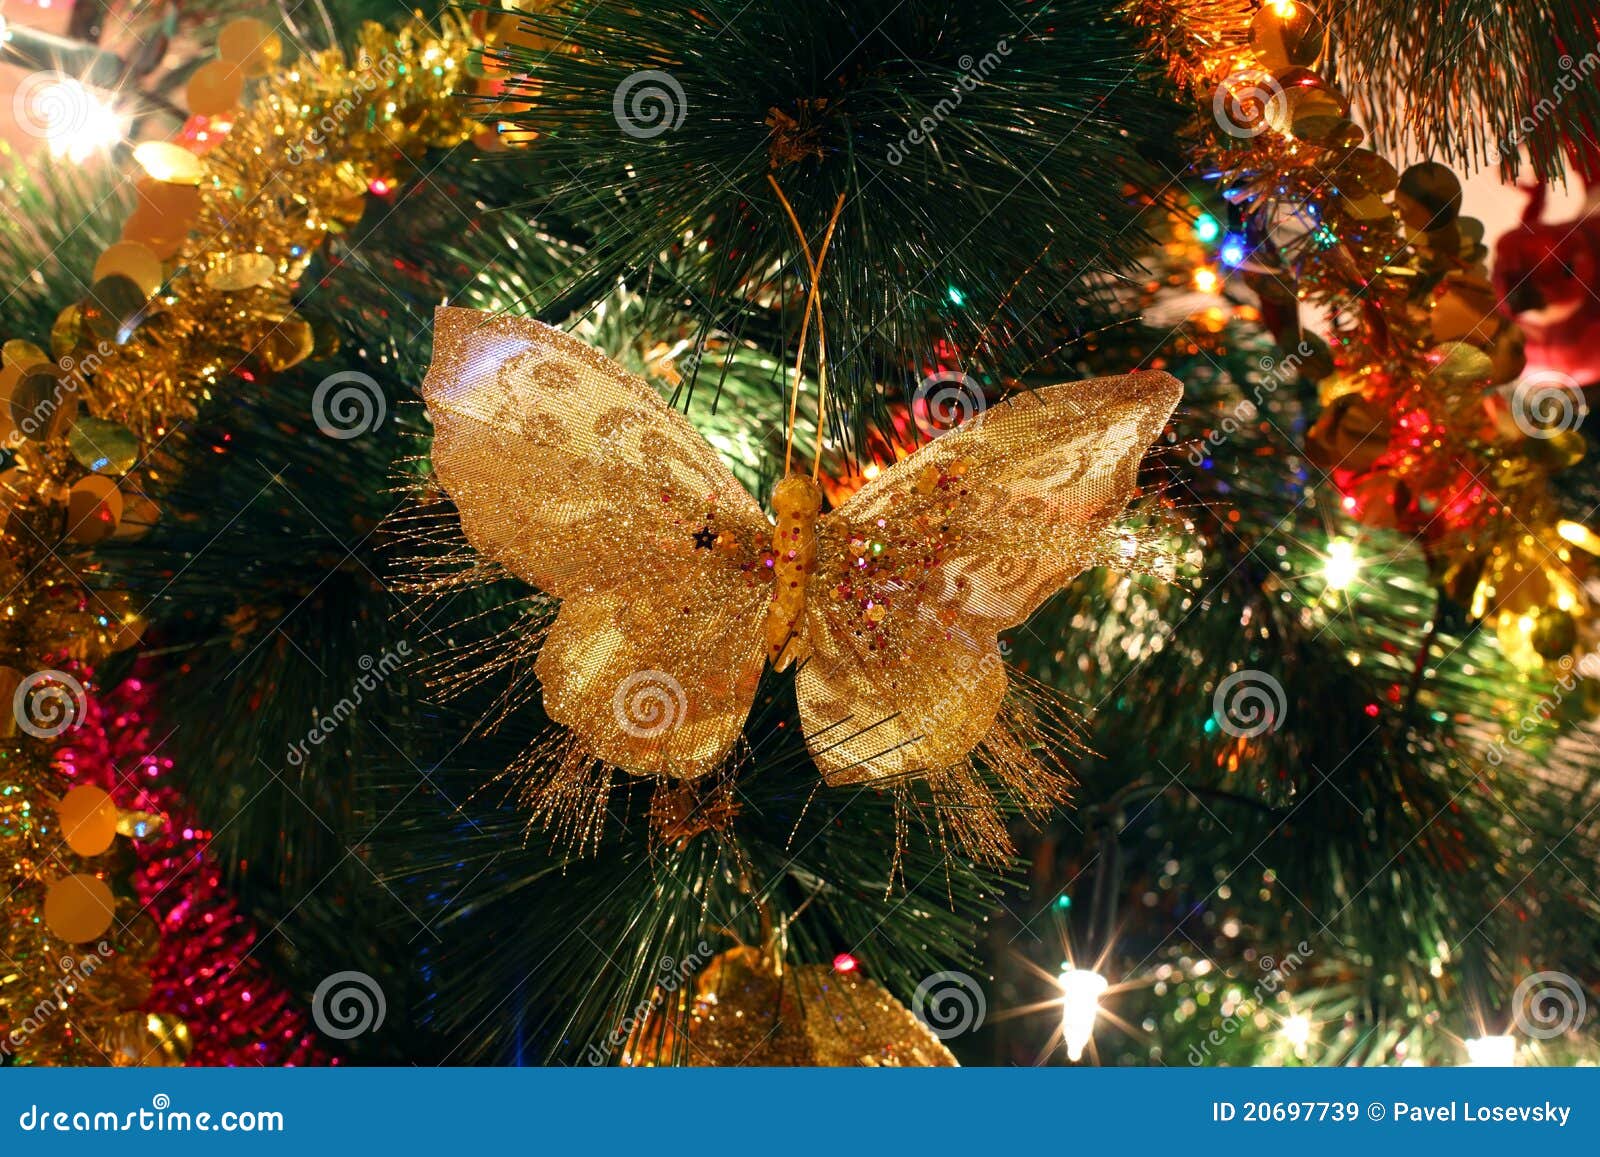 Ornamento Da árvore De Natal, Borboleta Brilhante Brilhante Imagem de Stock  - Imagem de dourado, adorno: 20697739